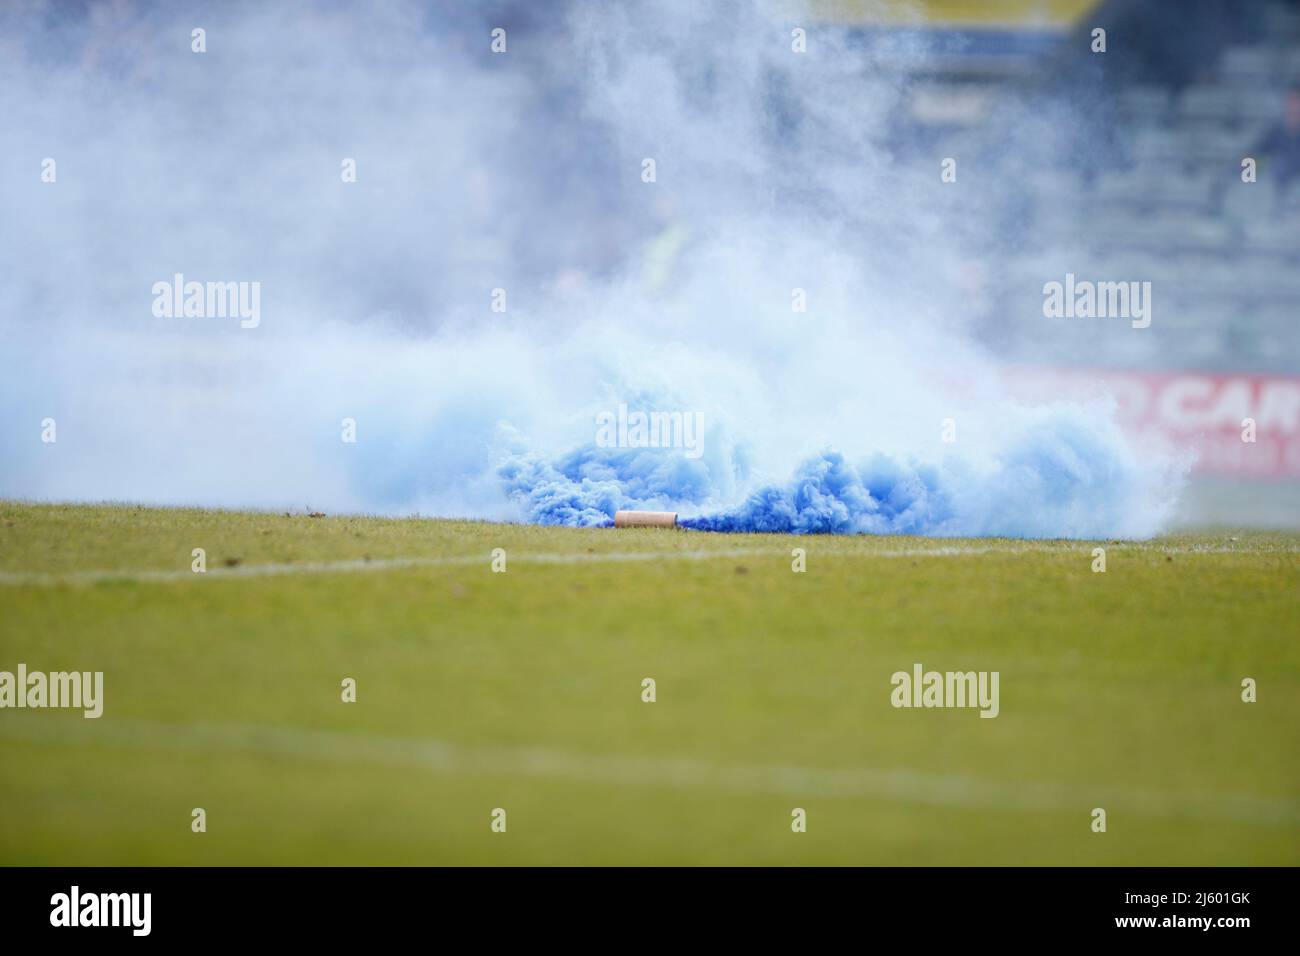 Grenade fumée bleue lancée sur le terrain par les fans du comté de Stockport Banque D'Images